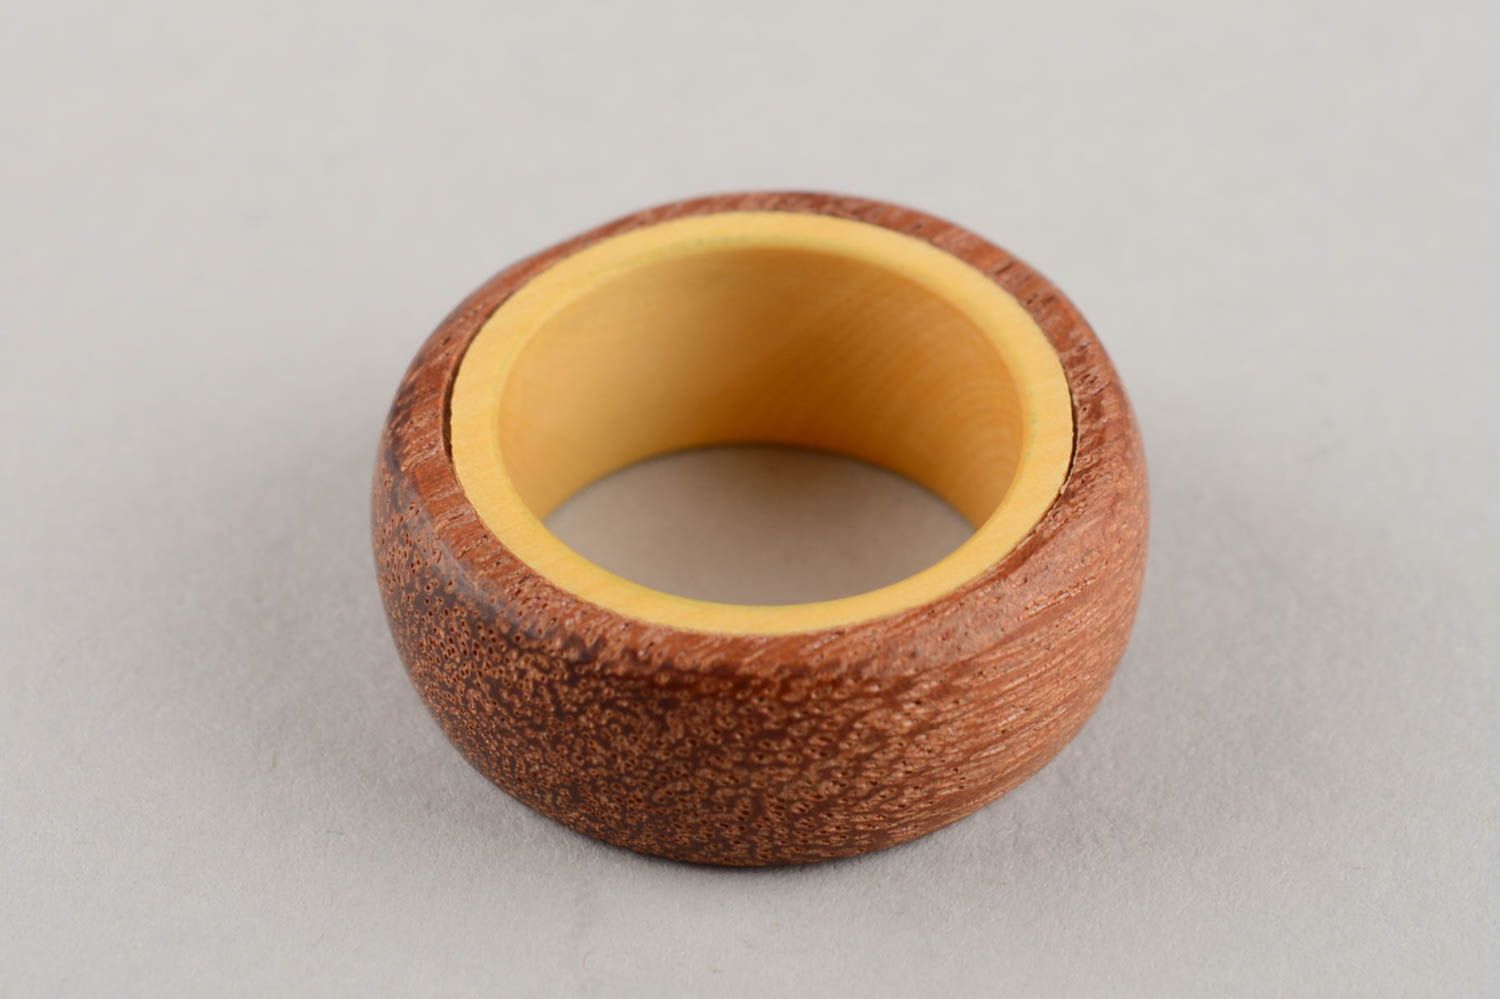 Уникальный авторский аксессуар кольцо ручной работы из дерева унисекс эко стиль фото 2